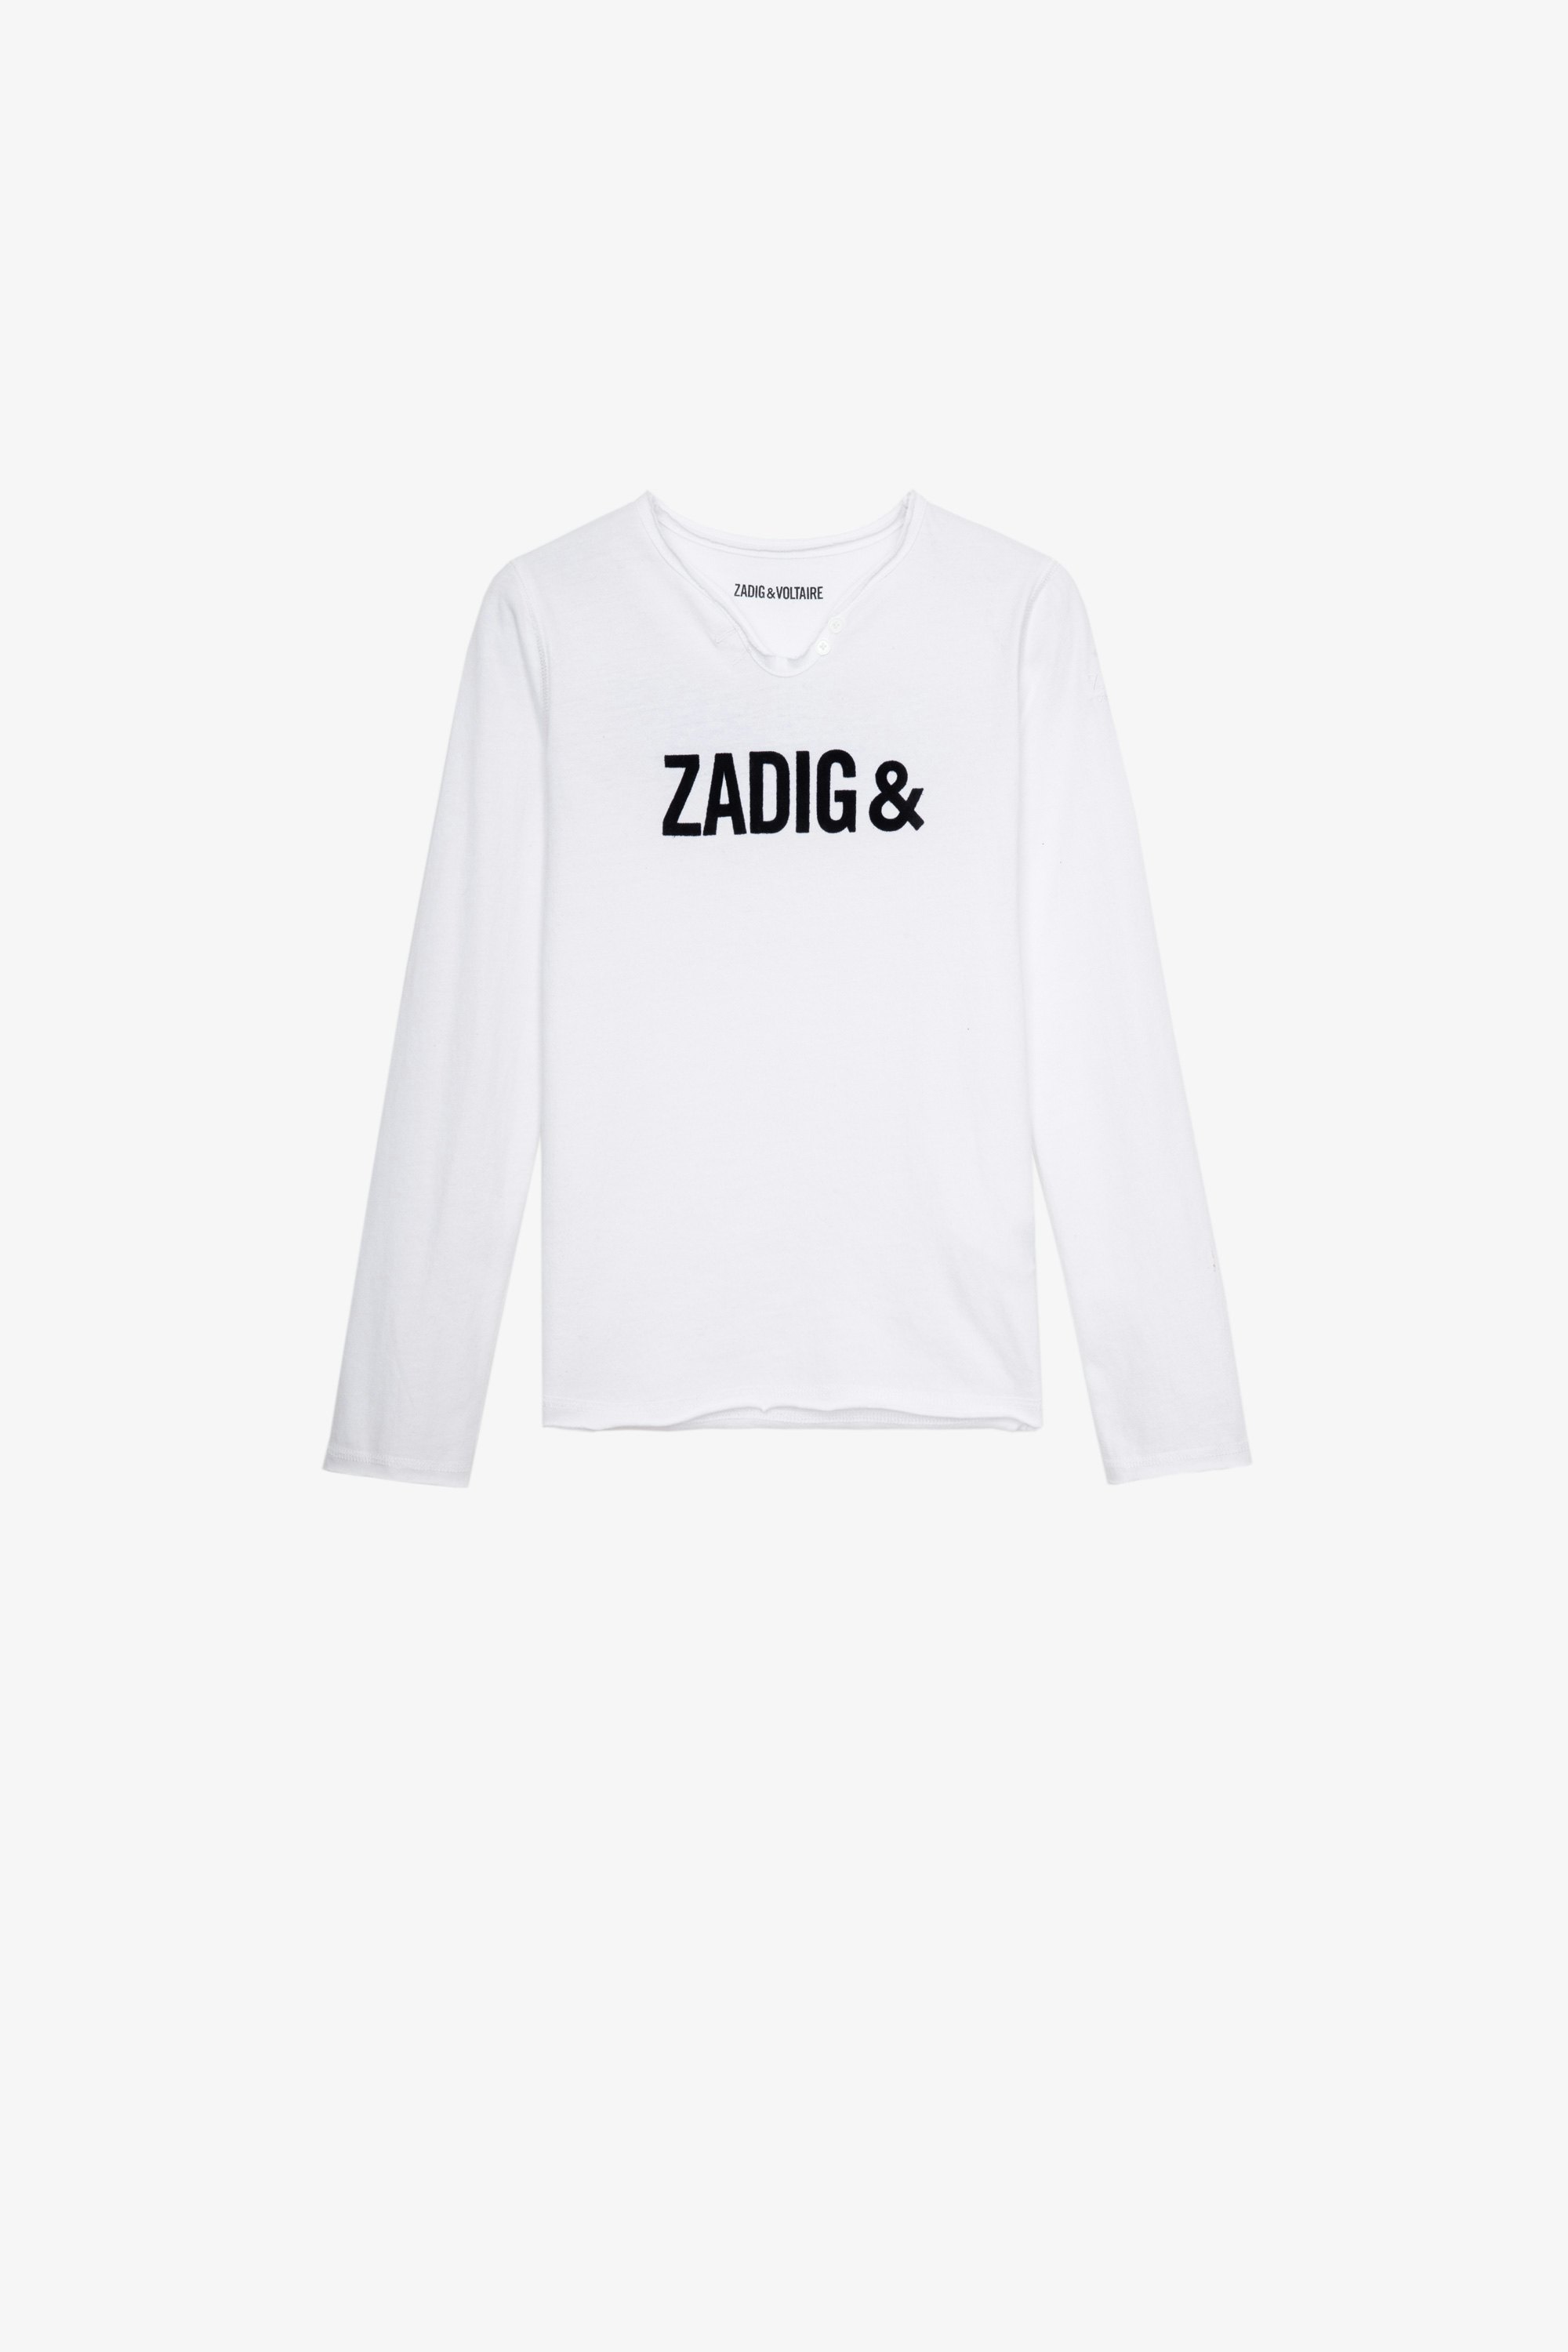 T-shirt Boxer Junior  T-shirt bianca in cotone a maniche lunghe con collo a serafino decorata con stampa iconica "Zadig&Voltaire" - Junior 